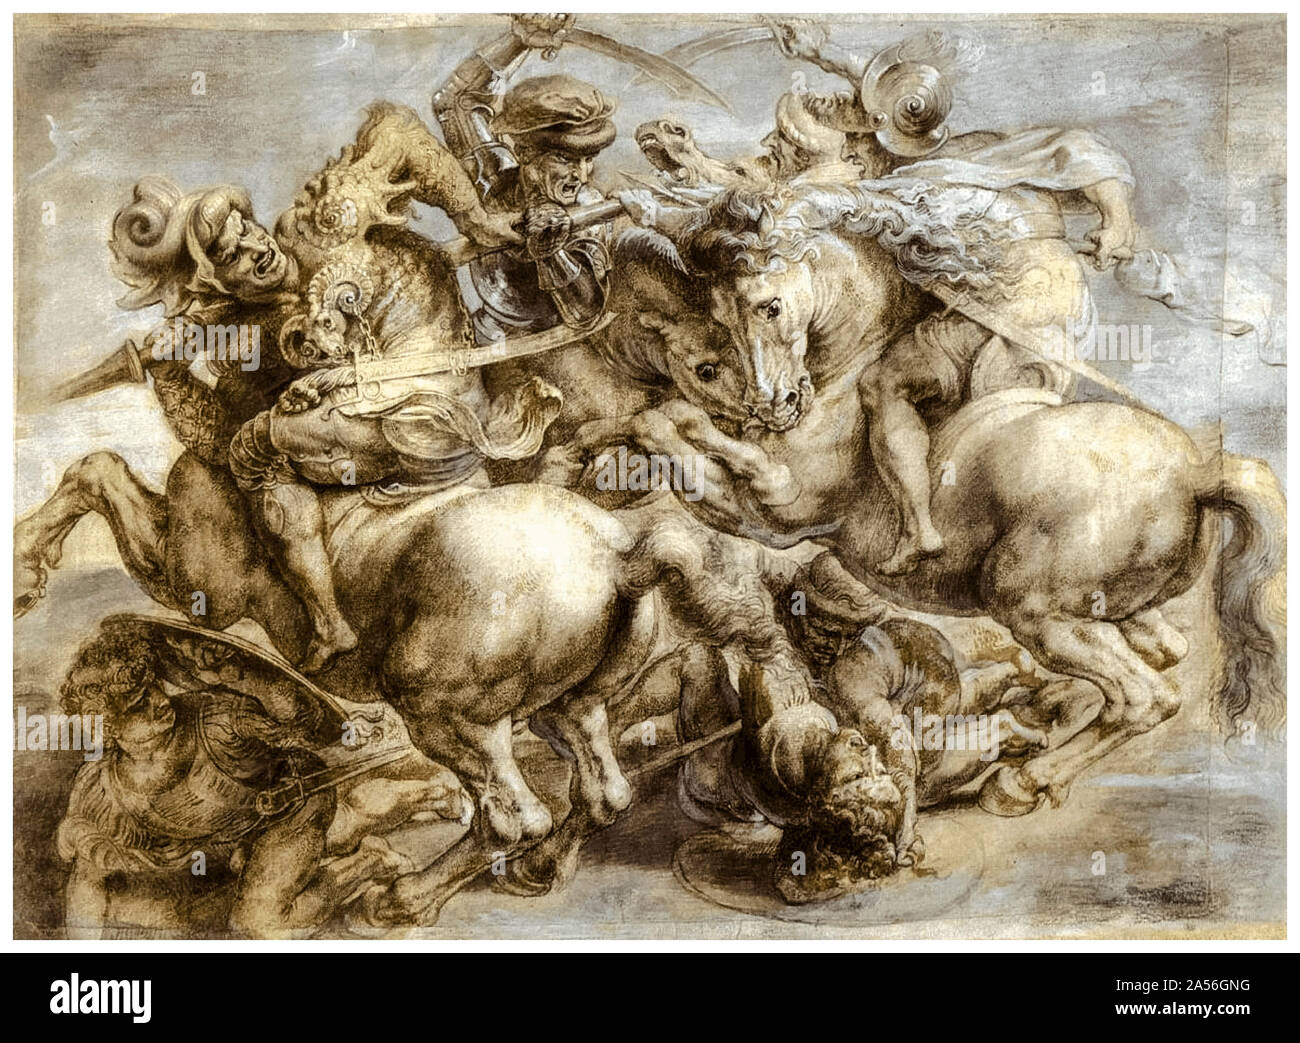 Peter Paul Rubens d'après Leonardo Da Vinci, copie après la bataille d'Anghiari , dessin, peinture, vers 1603 Banque D'Images